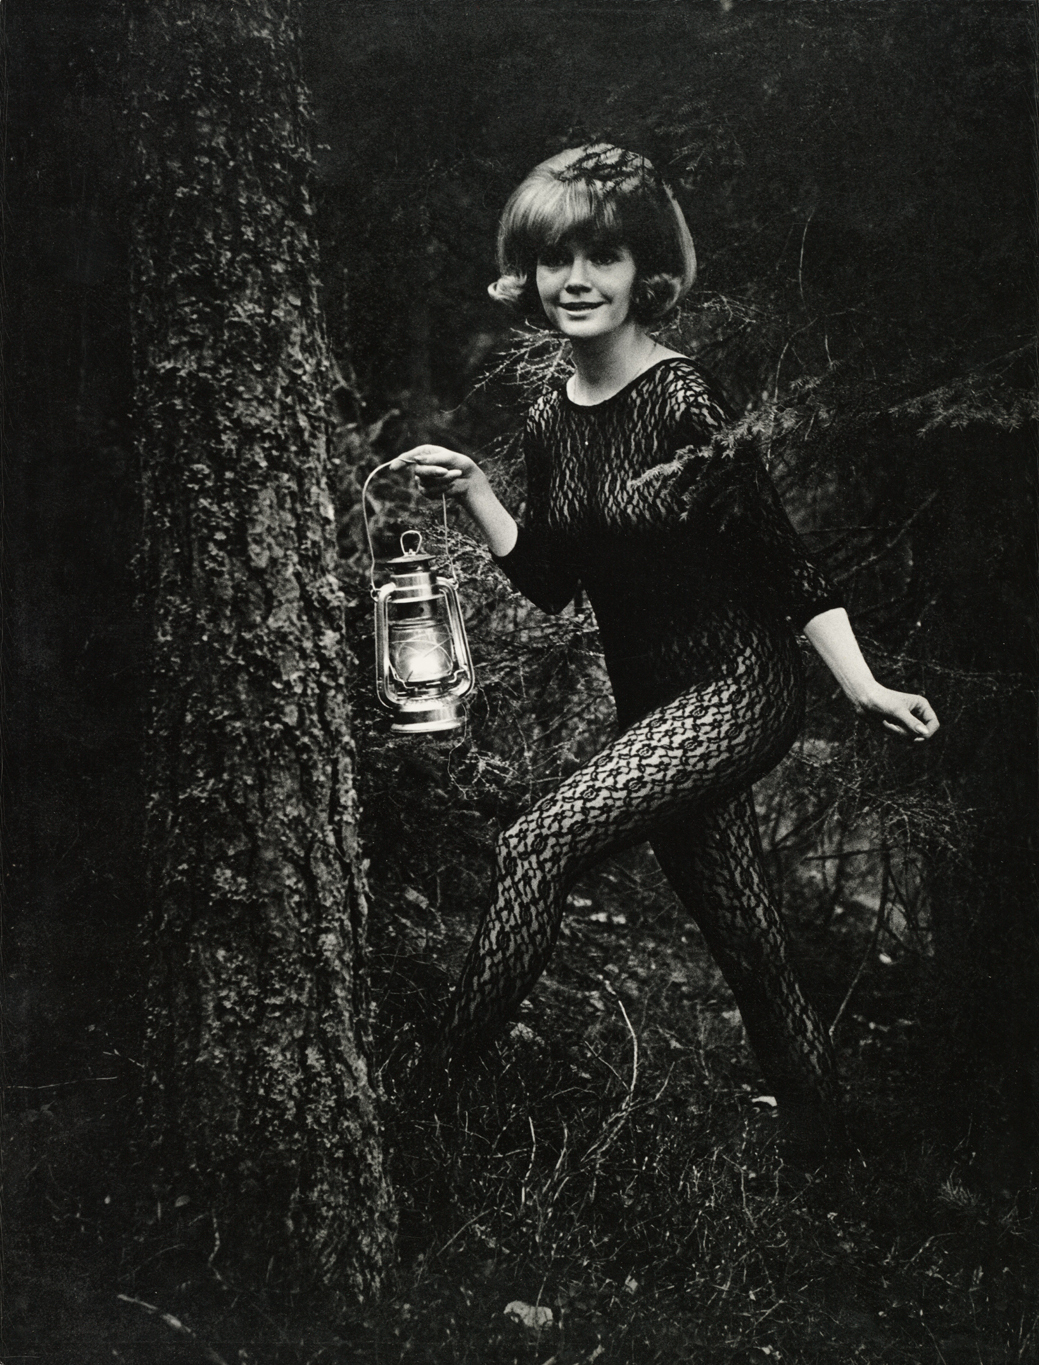 Mustavalkoisessa, tummassa kuvassa nainen poseeraa metsässä kokovartalopitsiasu päällään. Toisessa kädessä hänellä on lyhty.